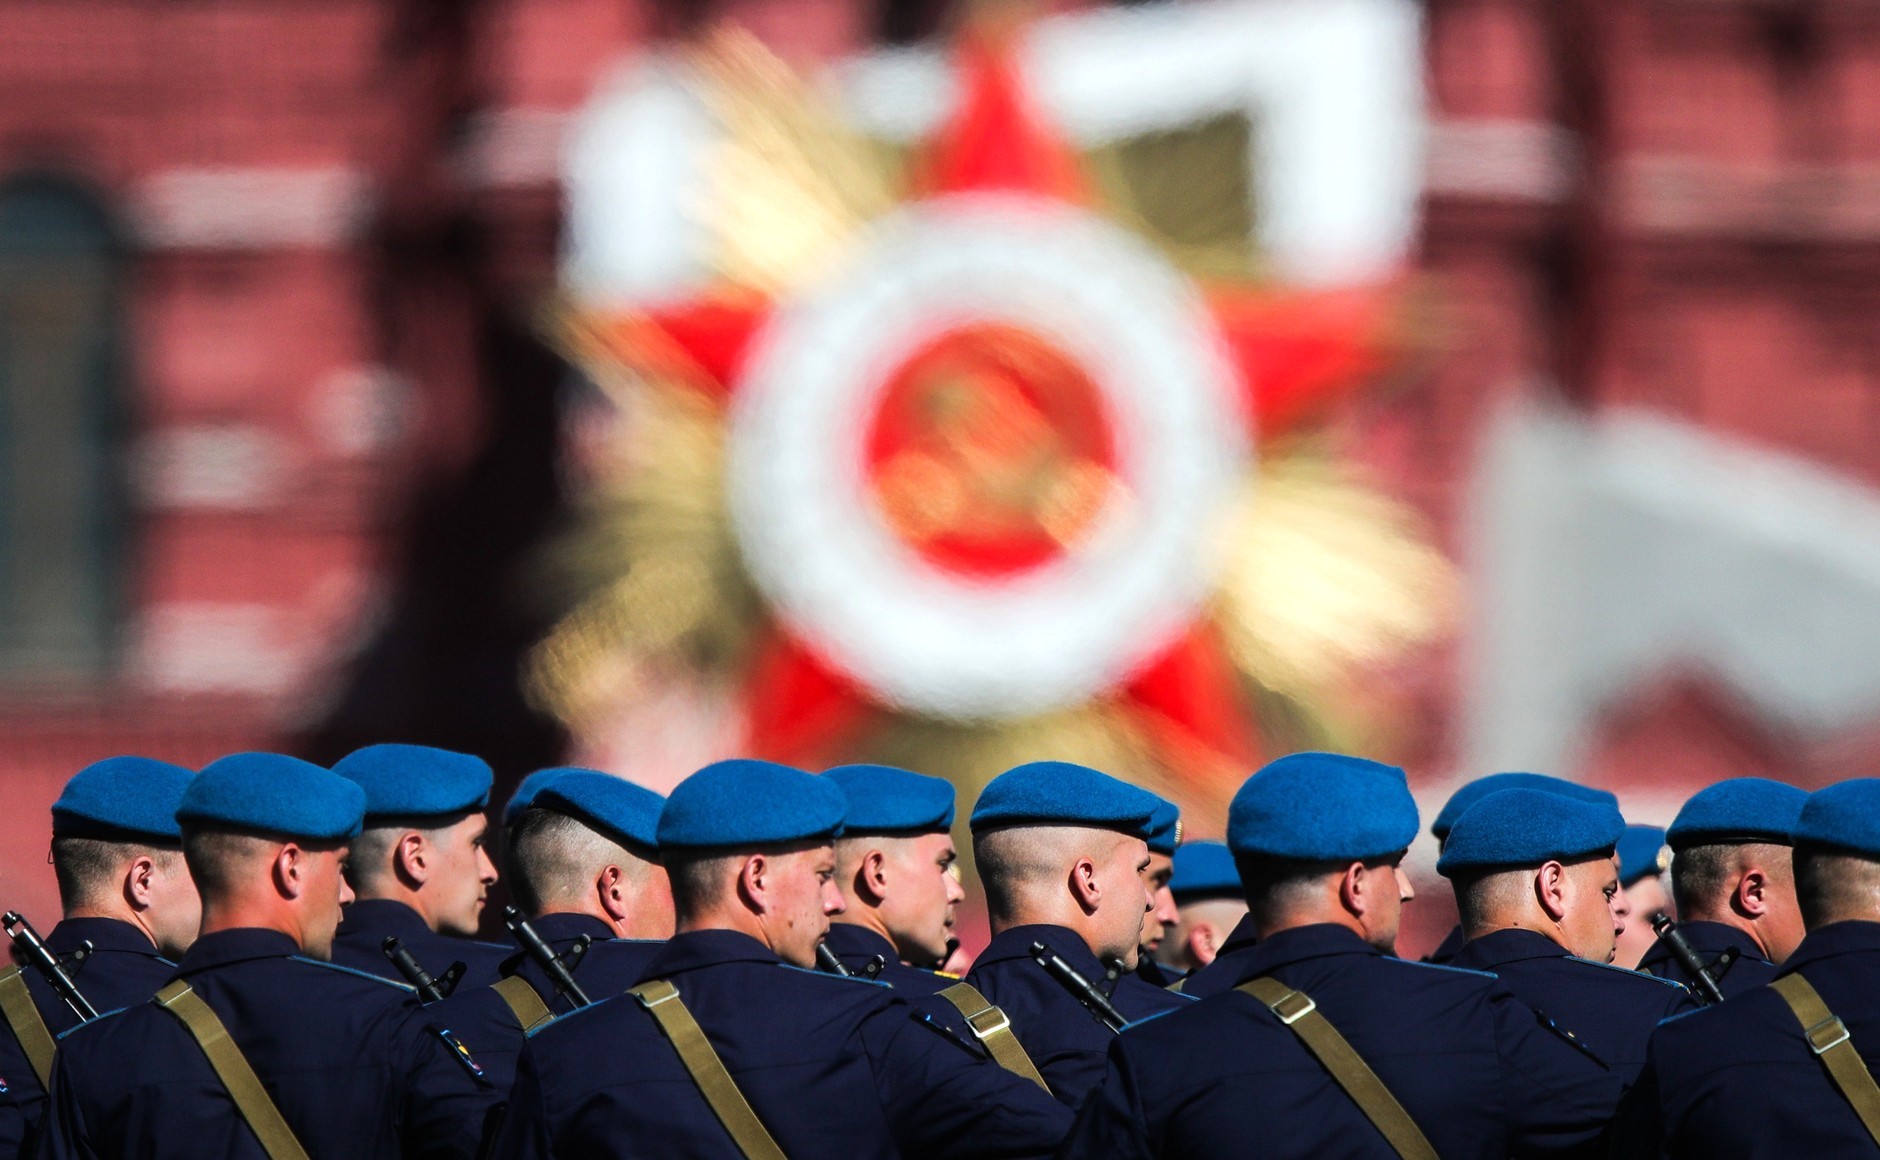 Dettaglio della parata del Giorno della Vittoria nella Piazza Rossa moscovita (fonte: kremlin.ru | CC BY  4.0)